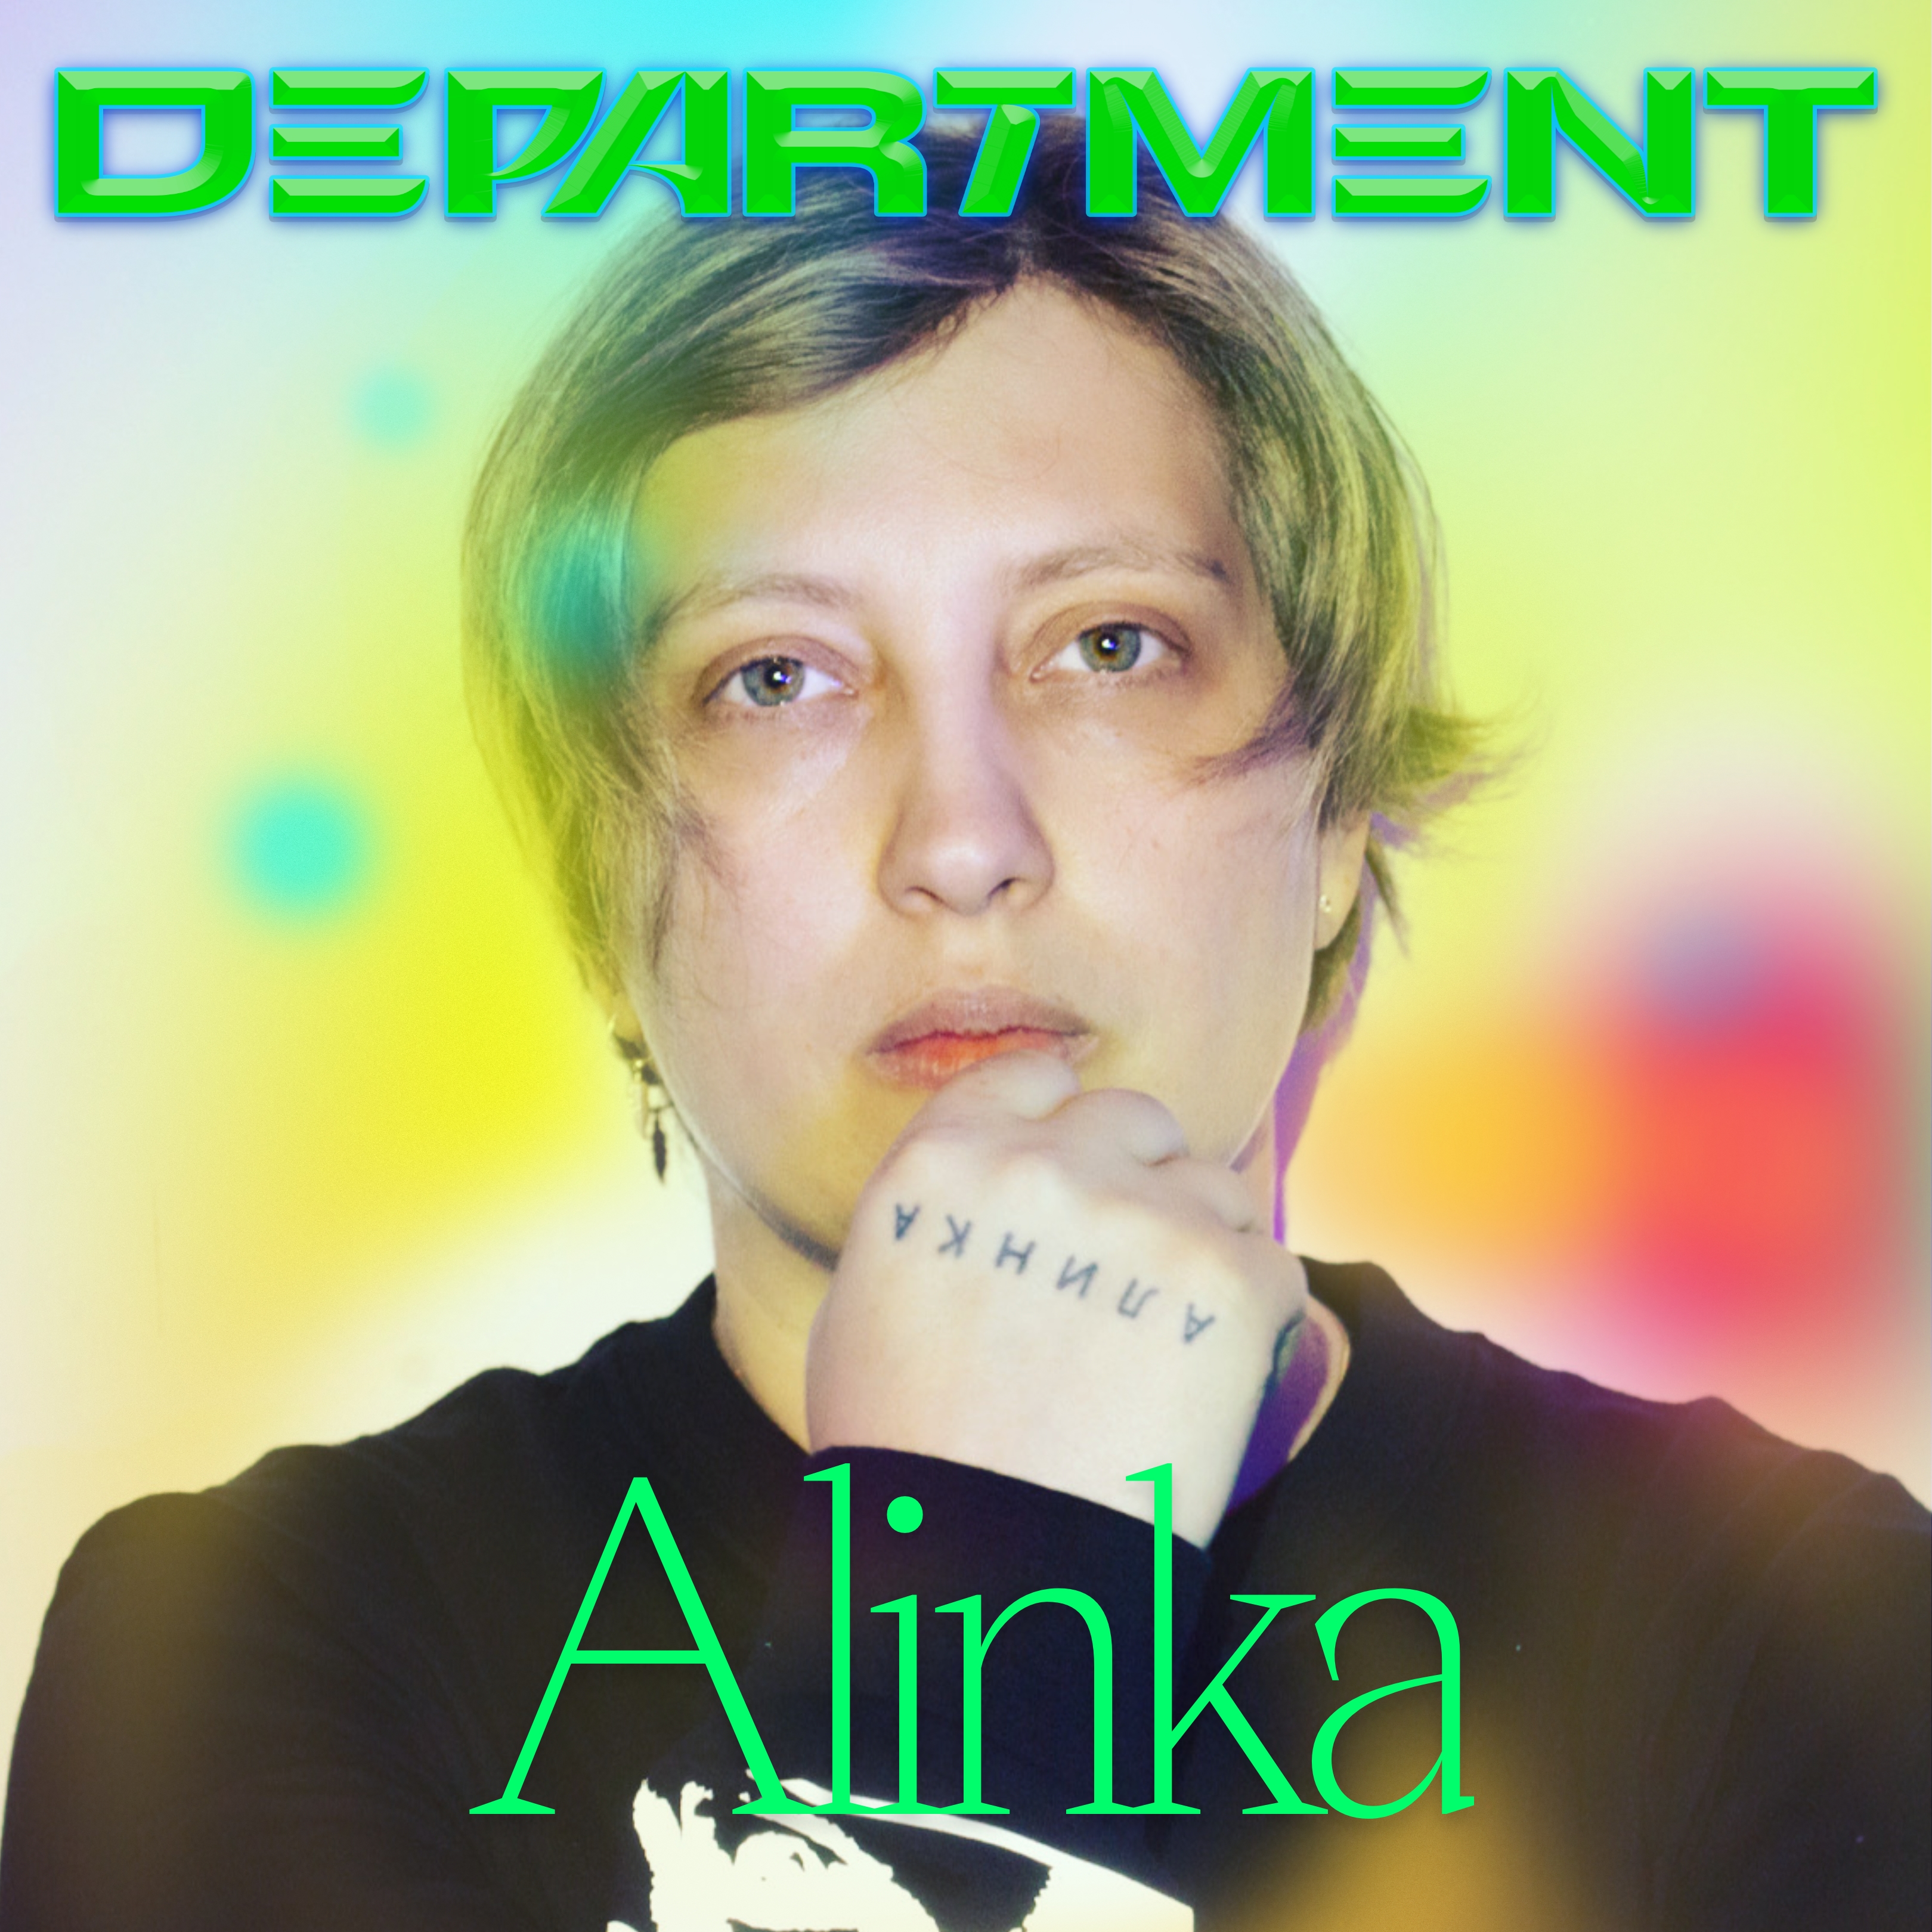 Alinka Stockholm Department Festival